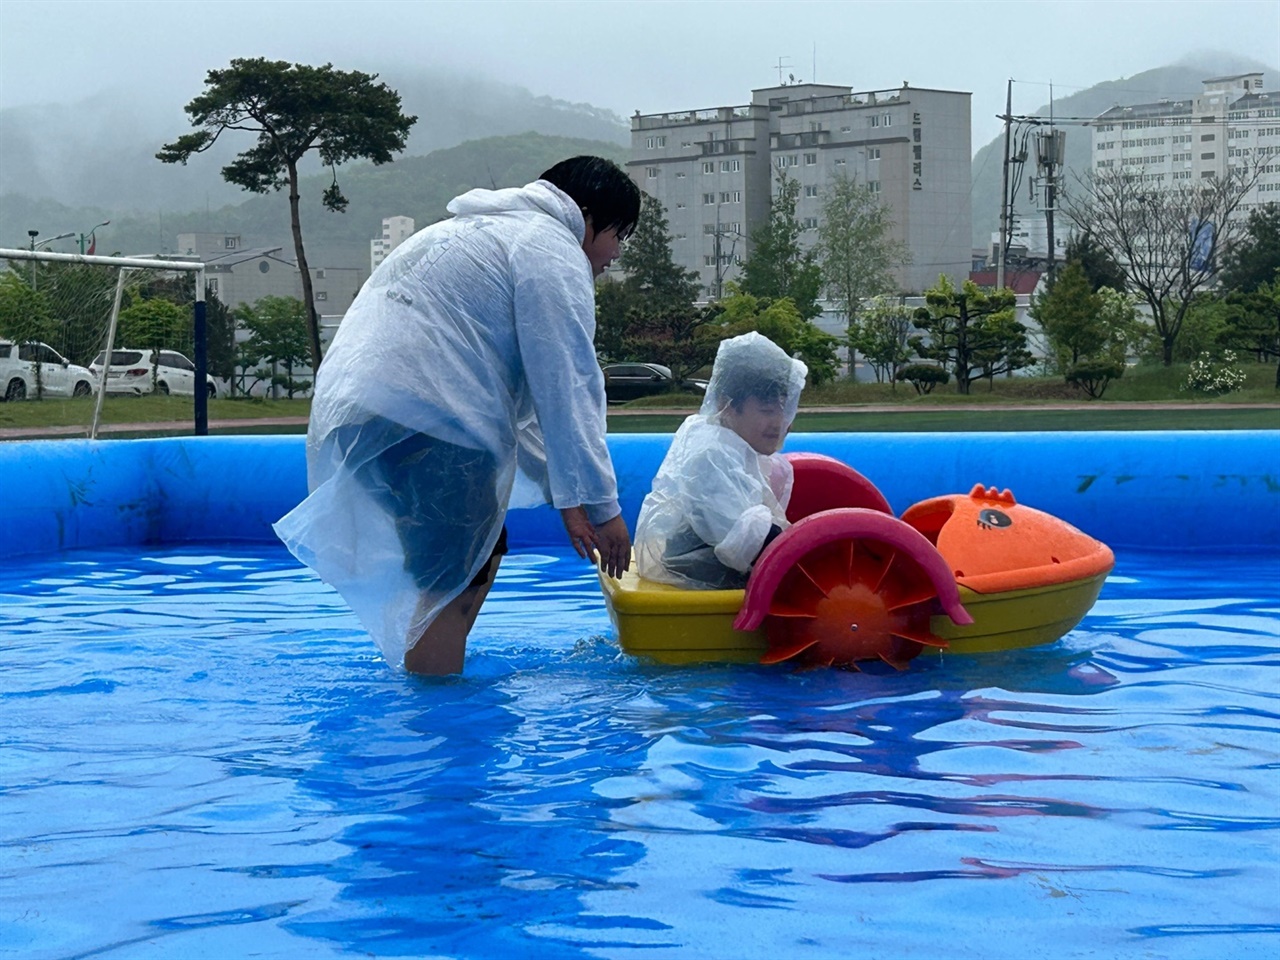 내리는 비에도 아랑곳하지 않고 어린이들은 운동장에서 특별히 설치한 물놀이장에서 캐릭터 배를 타는 등 어린이날을 맘껏 즐겼다.